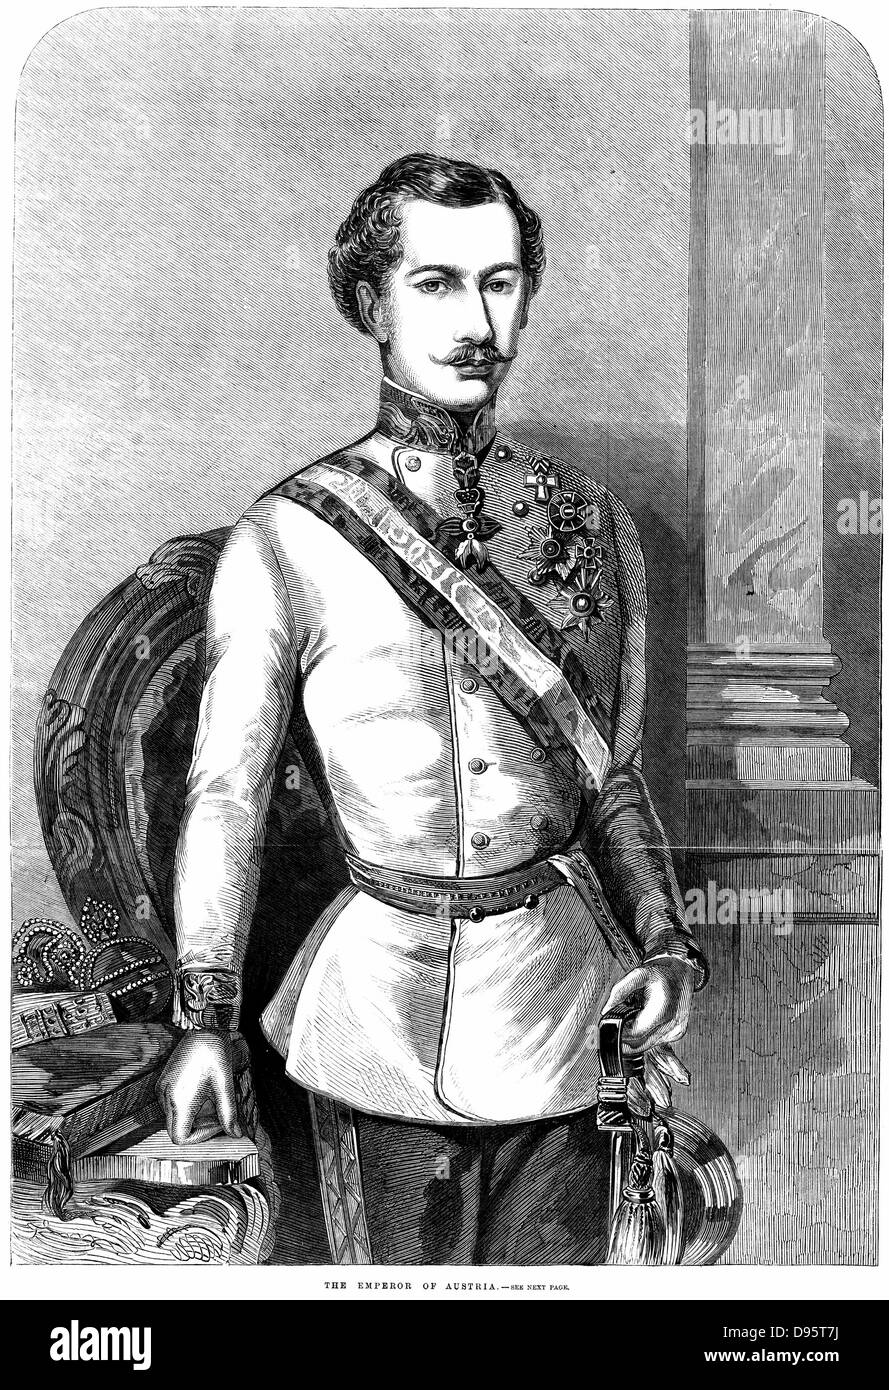 Franz Joseph ich (1830-1916) Kaiser von Österreich 1848. Gravur von 1859 Stockfoto